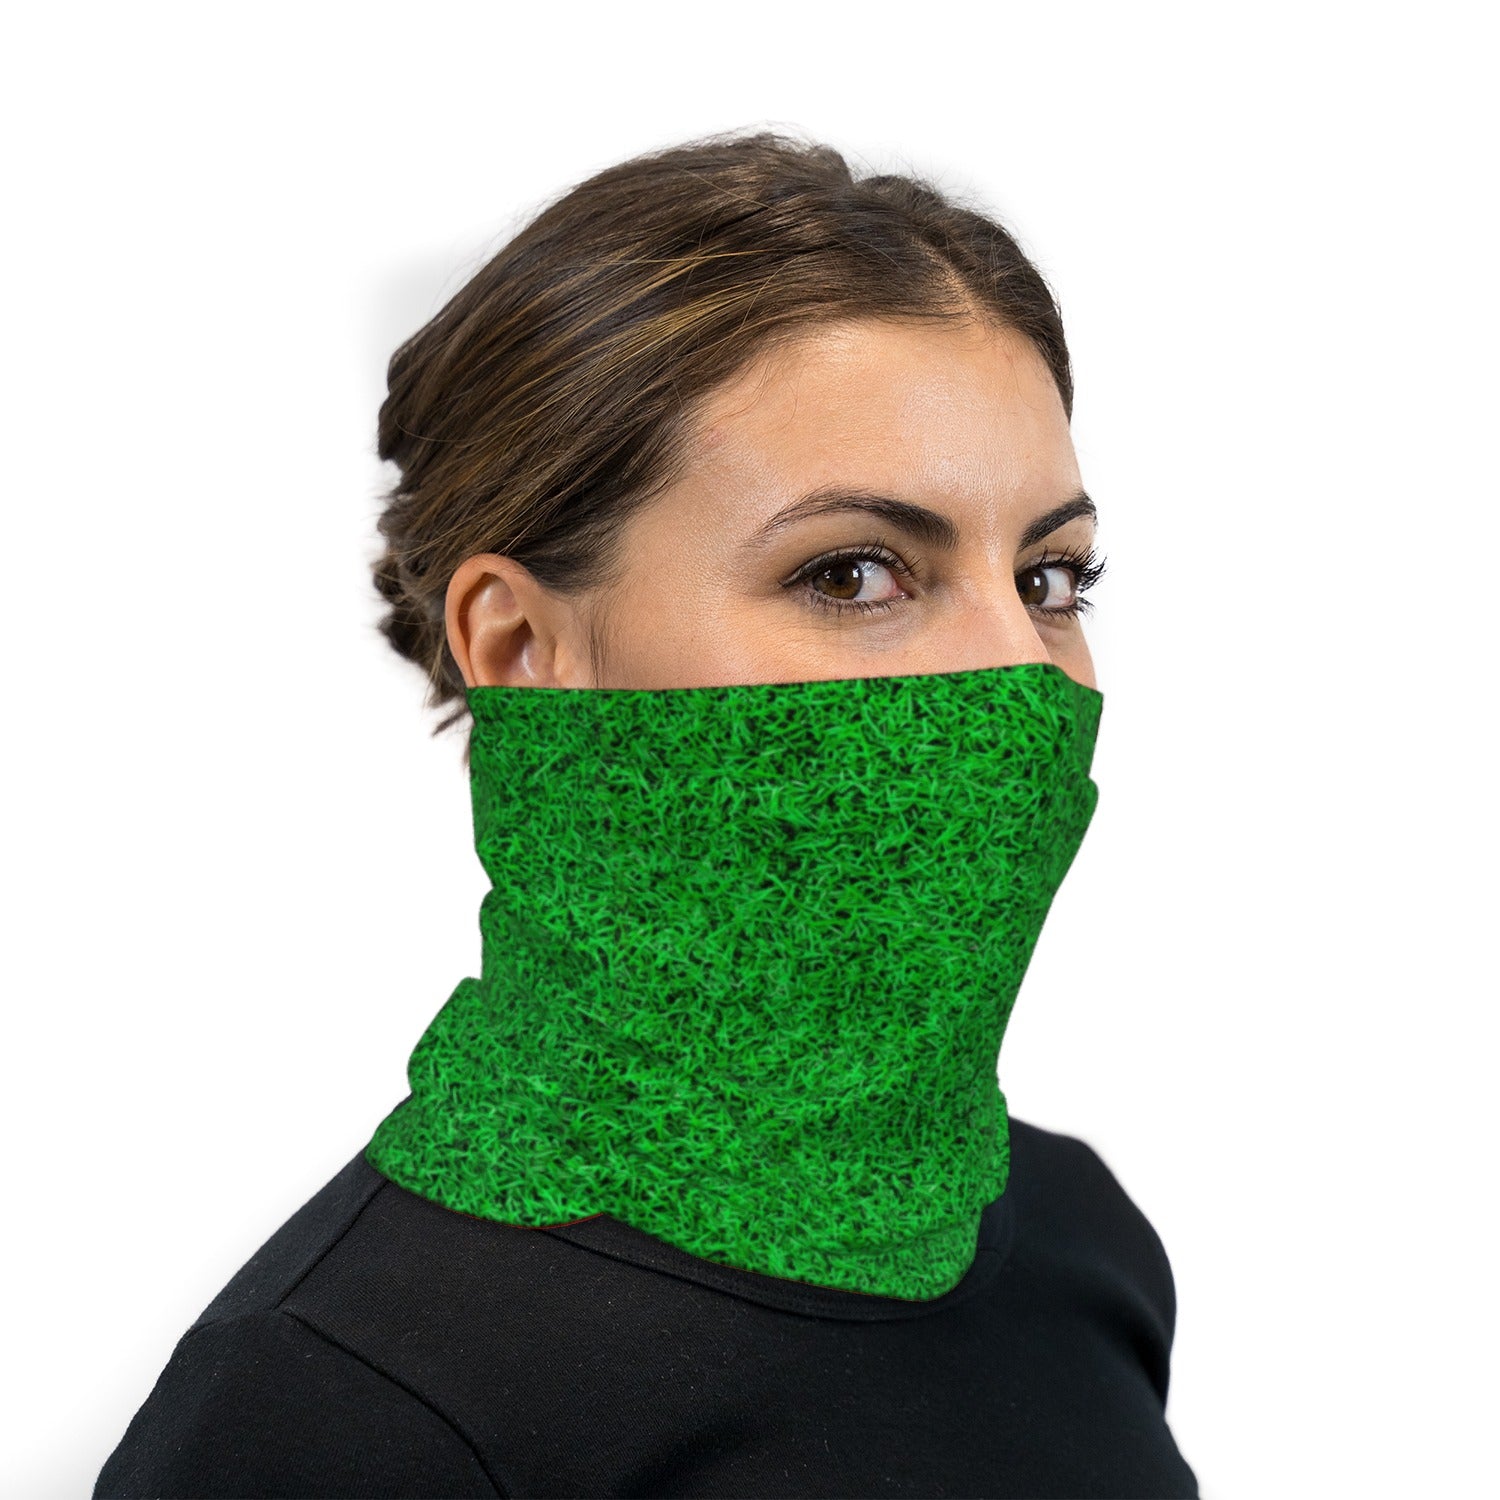 Green Turf Grass Neck Gaiter Face Mask